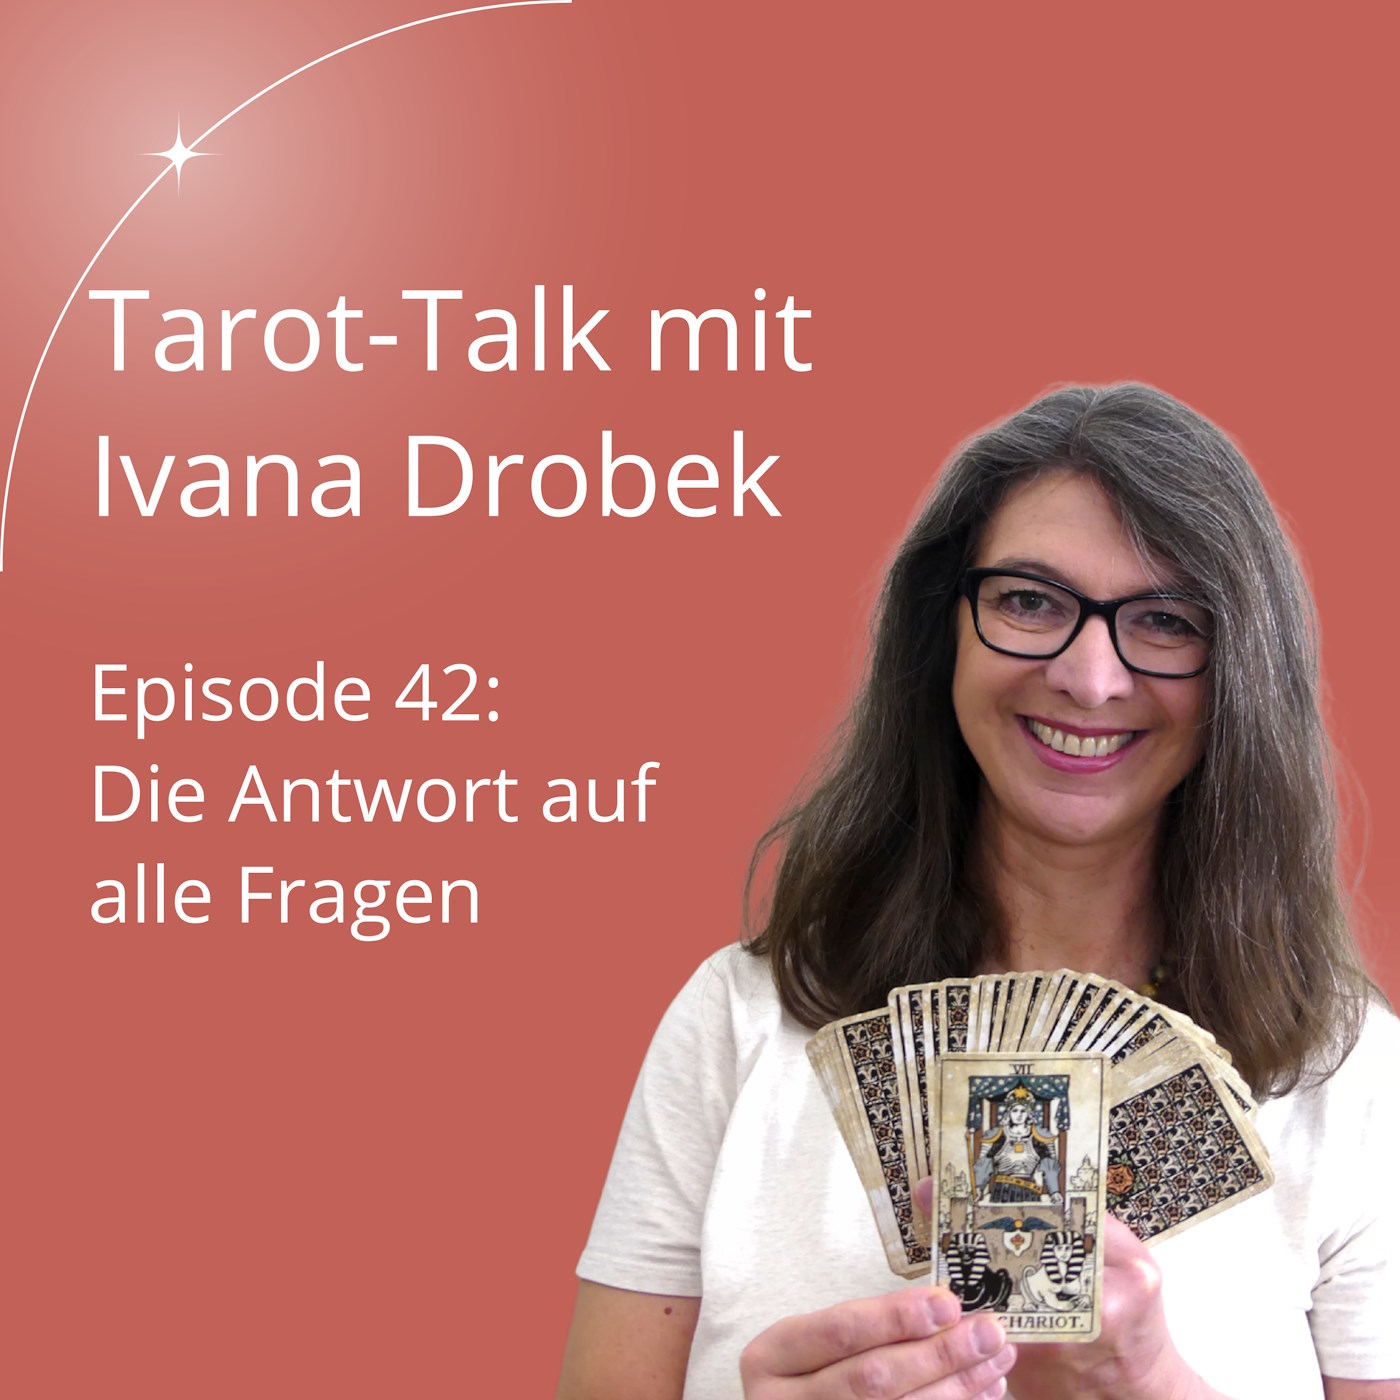 Tarot-Talk Episode 42: 42 und die Antwort auf alle Fragen mit Tarot